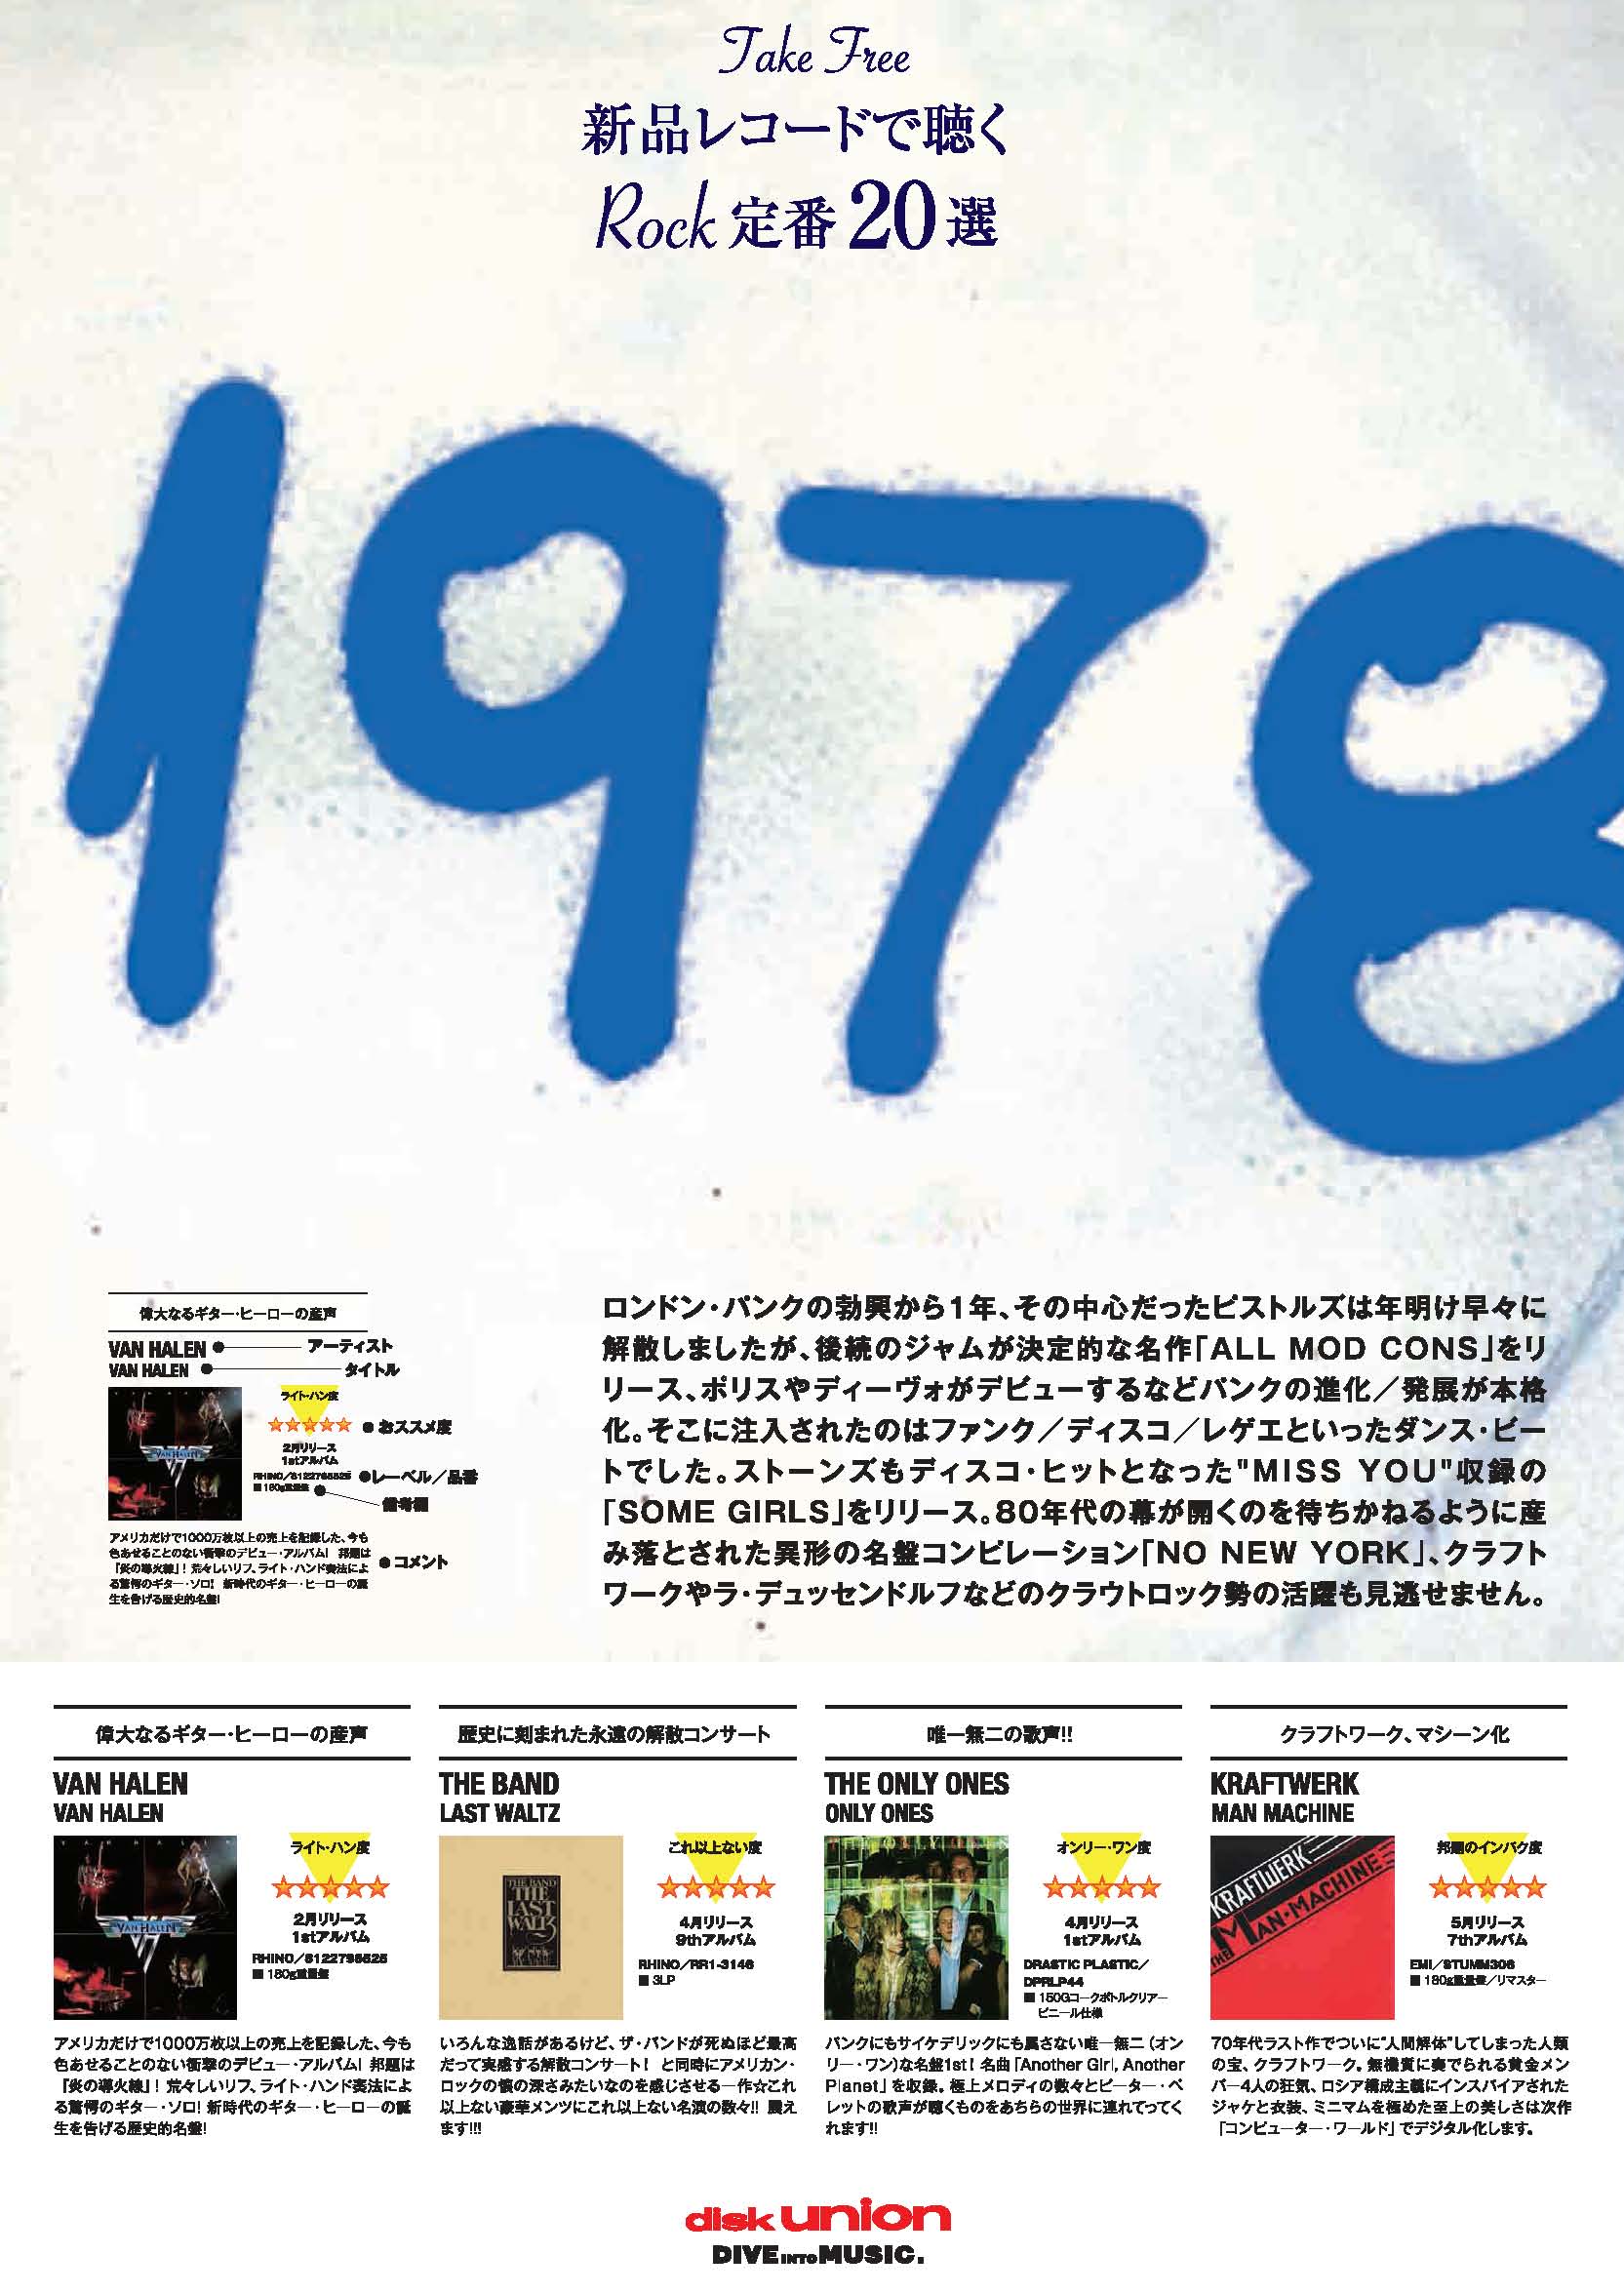 1978 / STANDARDS♪ 店頭でリーフレット配布! 「1978年のレコード20枚」 これまで好評の「200 STANDARDS 新品レコードで聴くロック定番200選」の番外編!